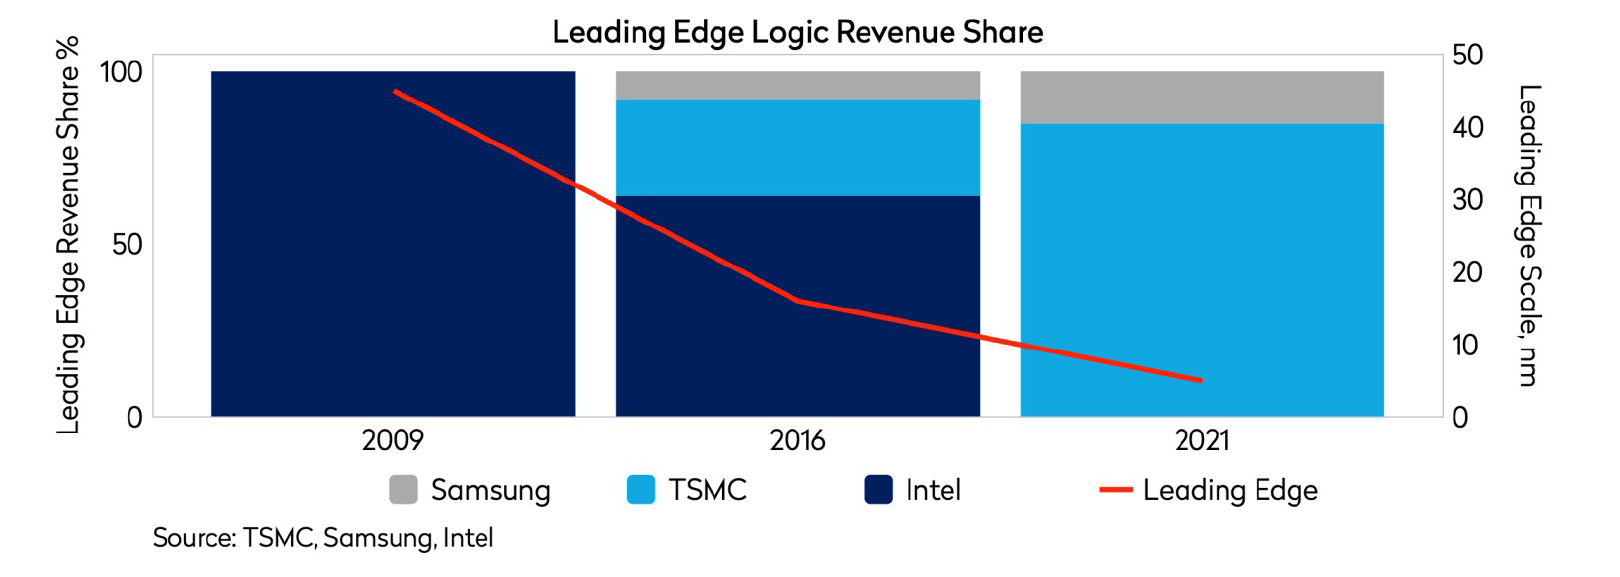 leading edge logic revenue share